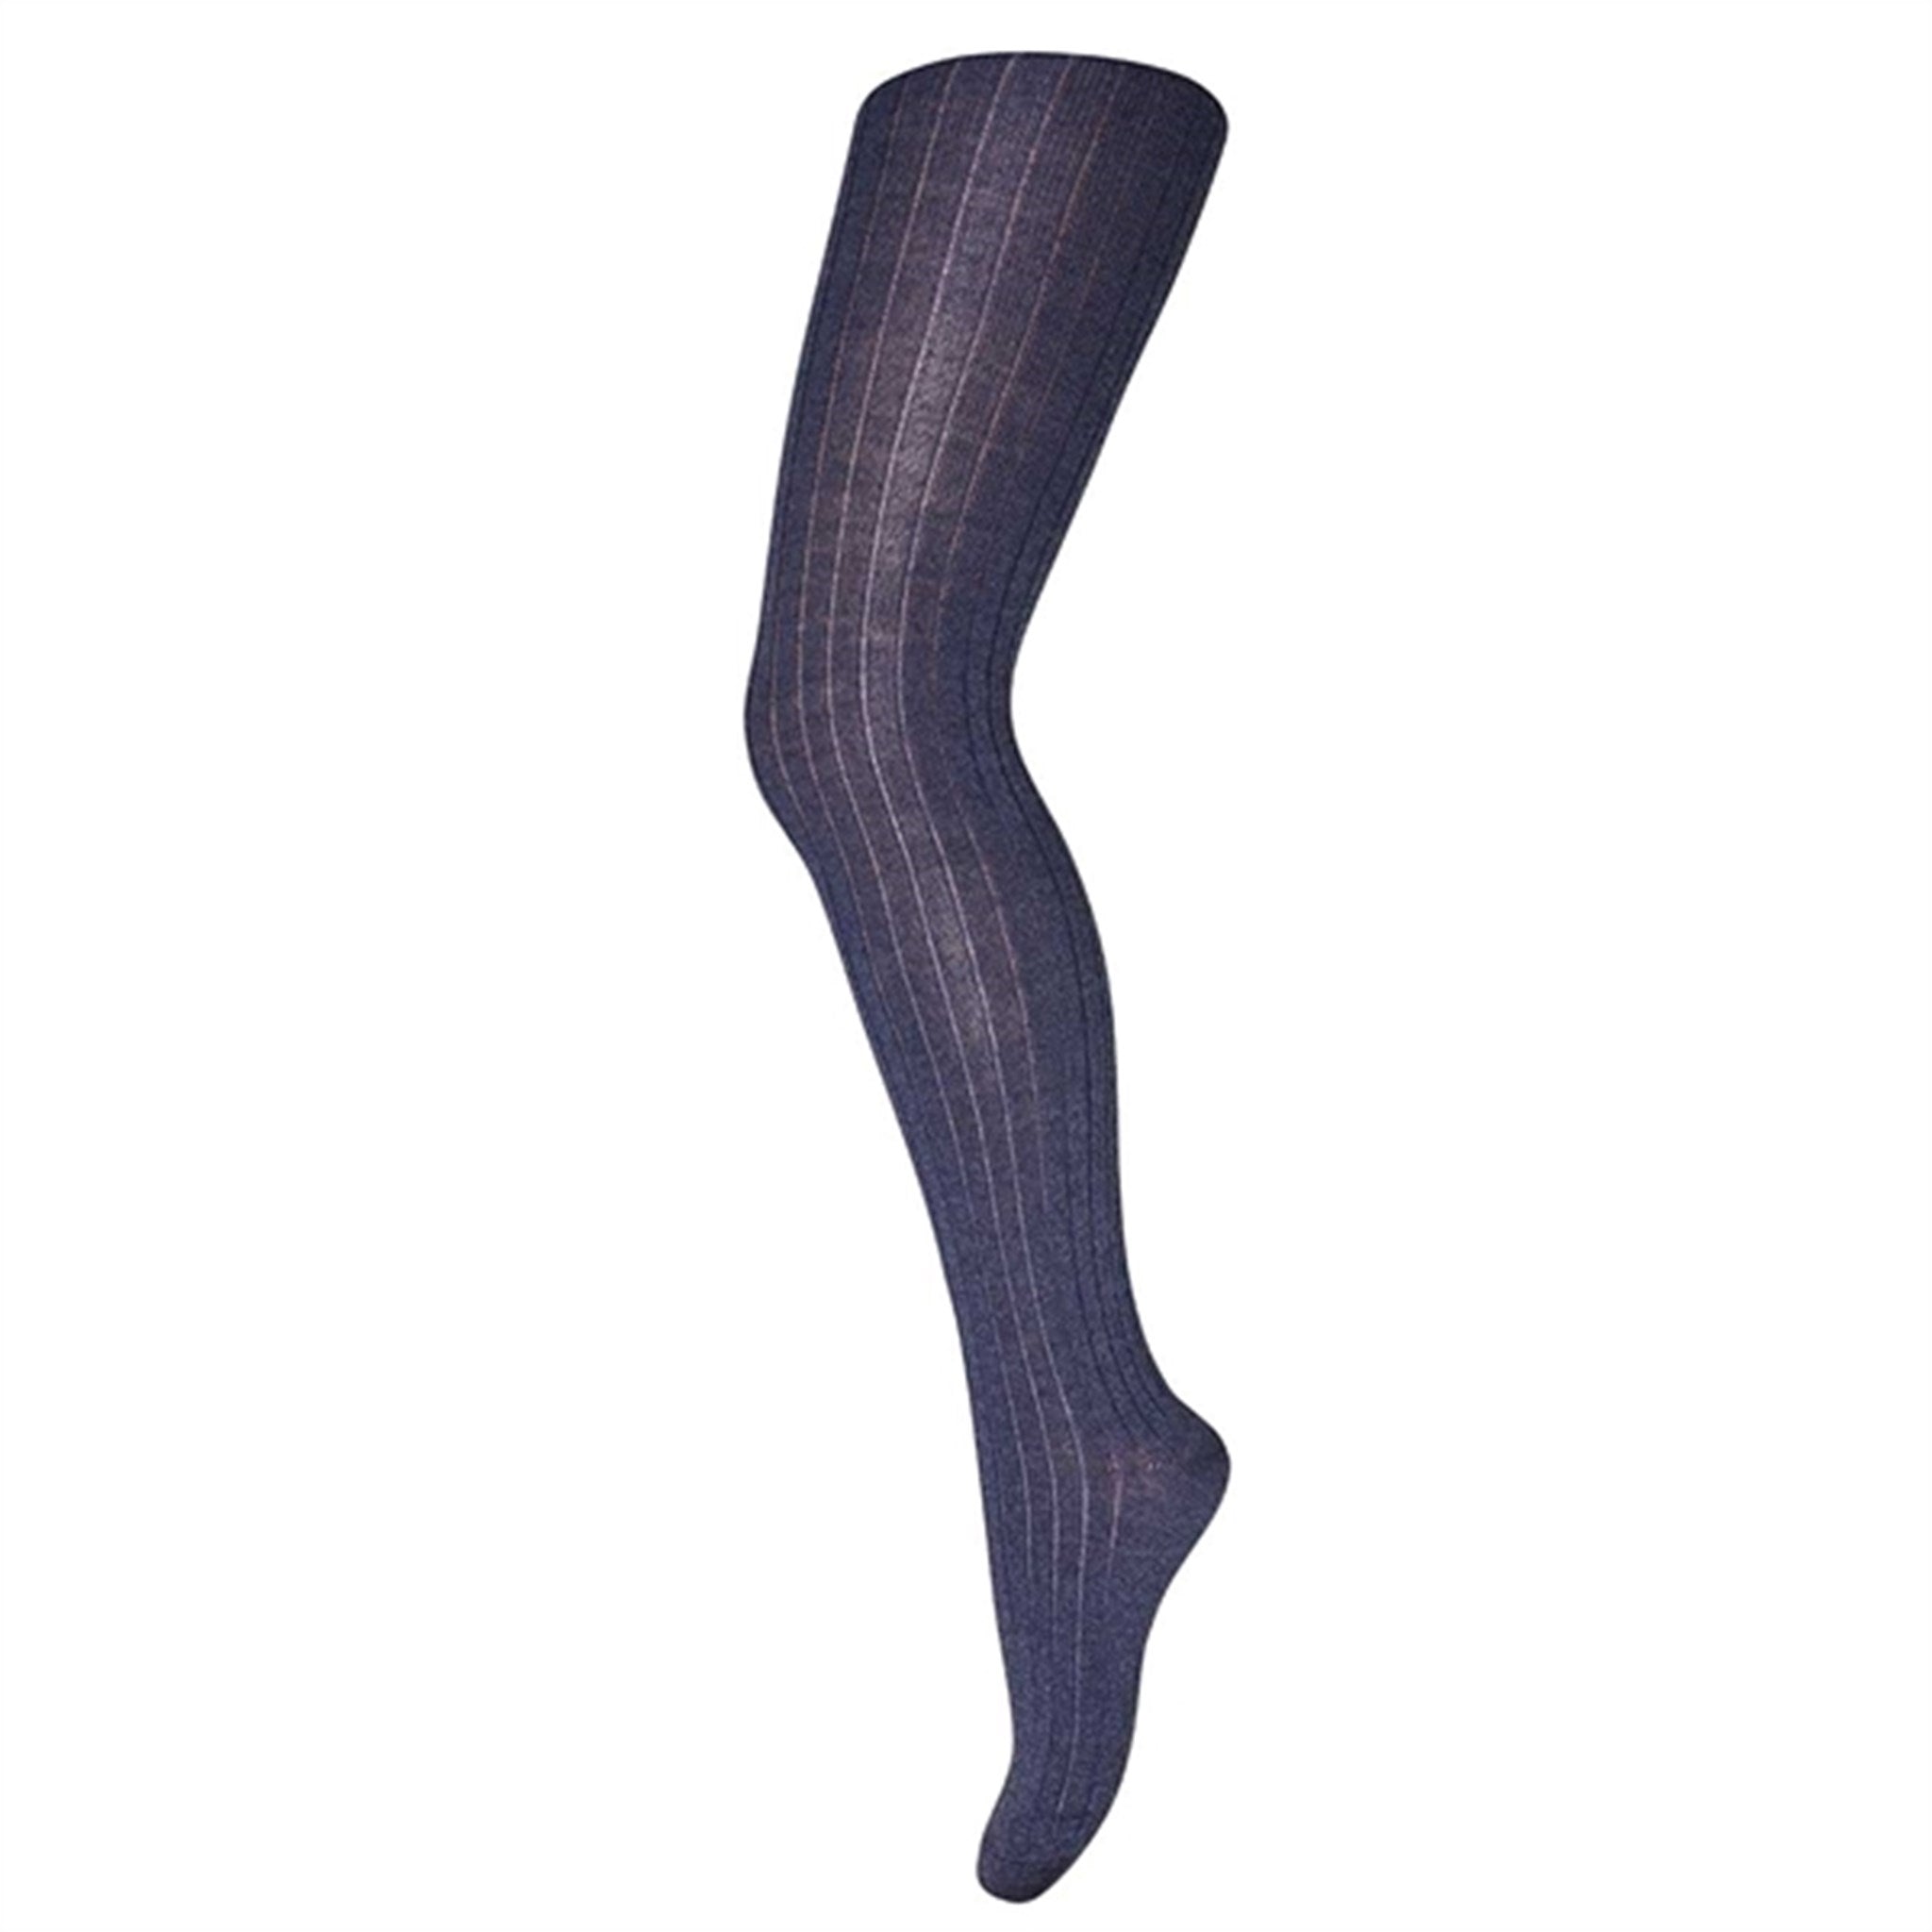 MP 128 羊毛带筋裤袜 498 深蓝色黑斑 - 舒适与时尚兼具